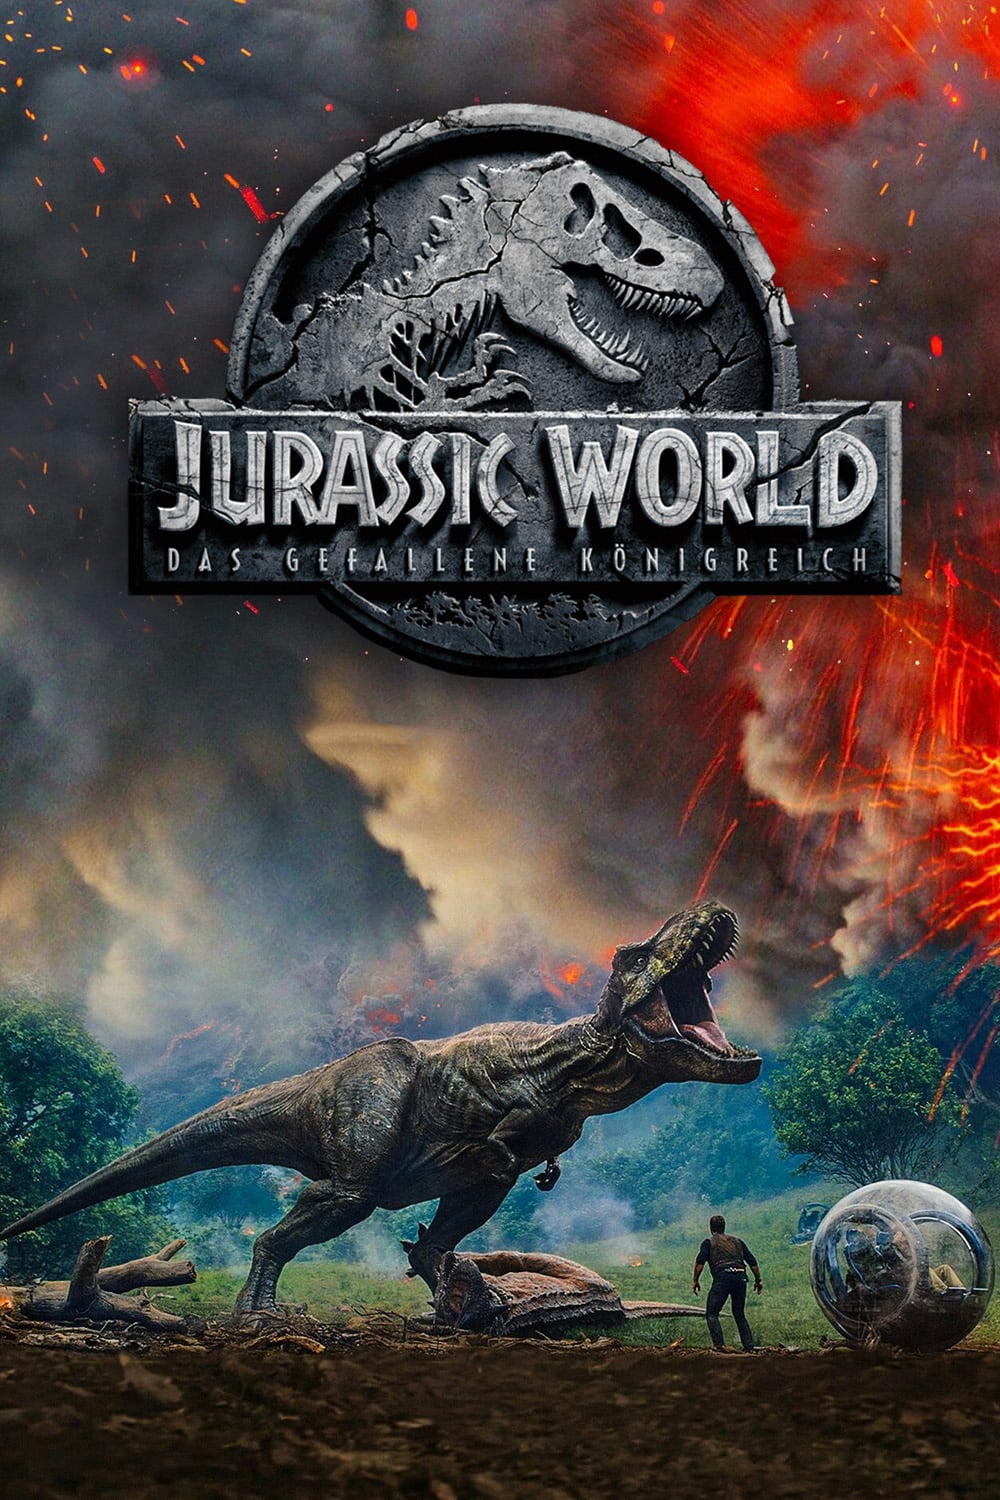 Plakat von "Jurassic World: Das gefallene Königreich"